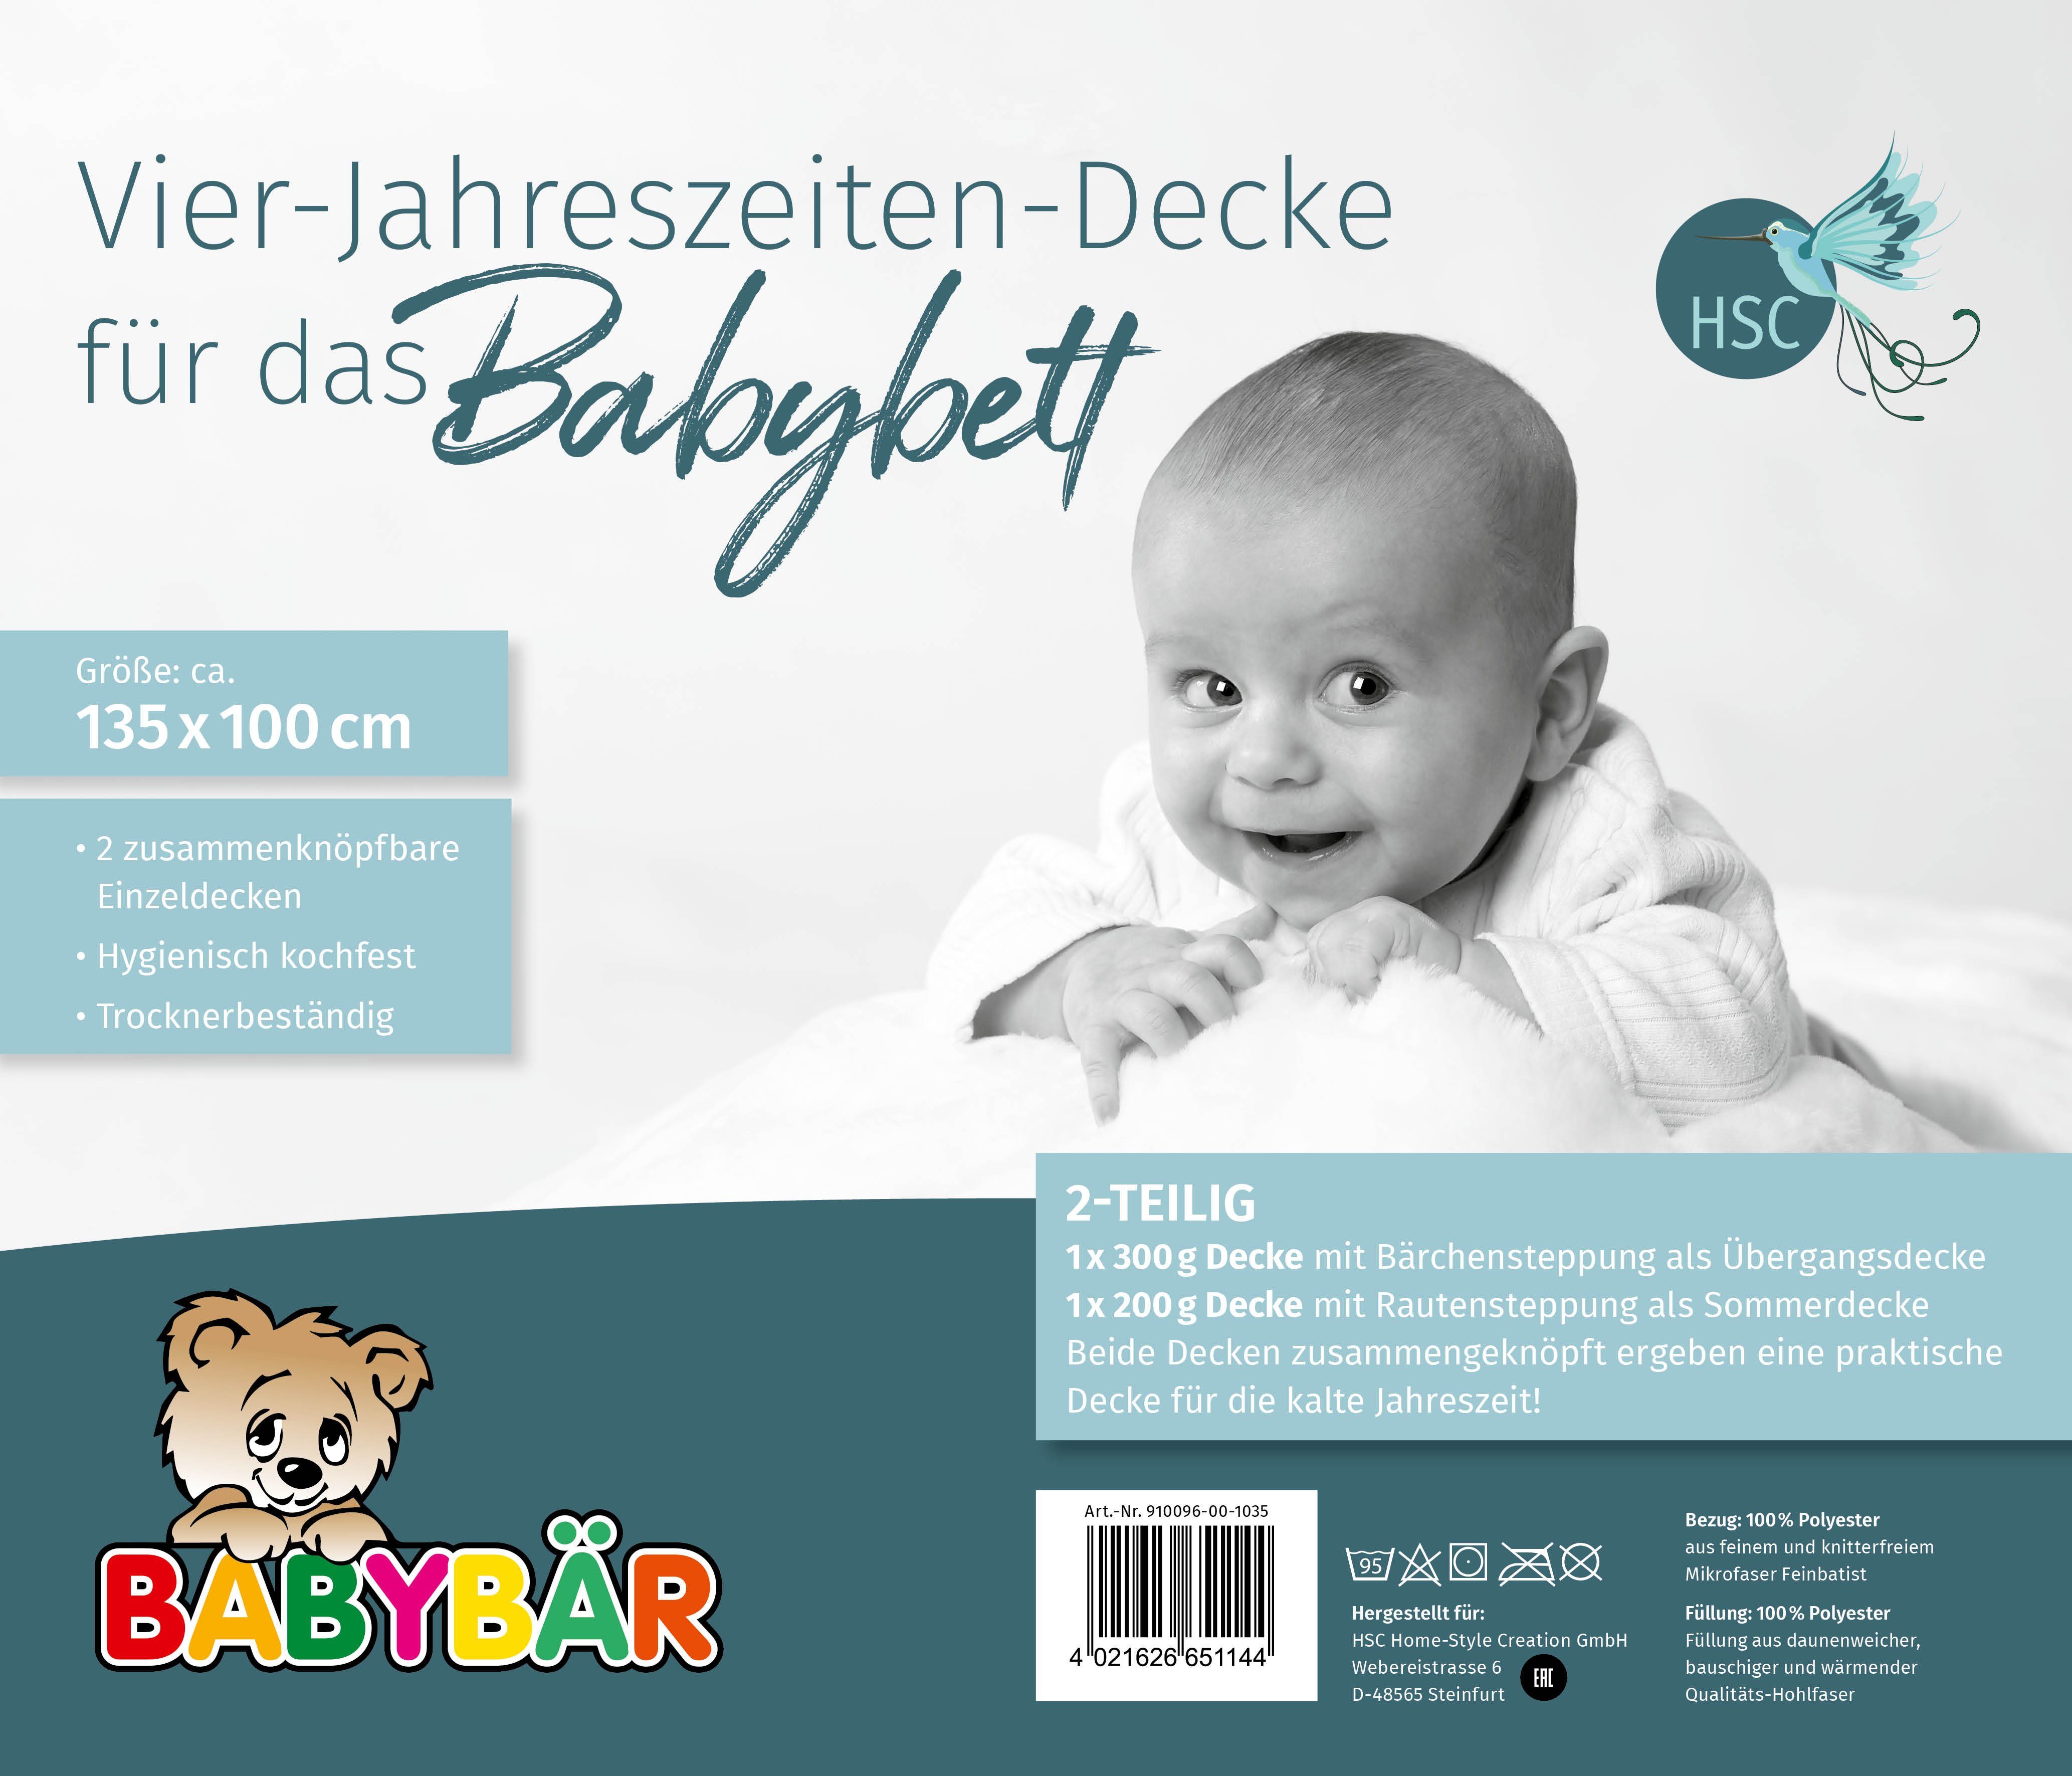 Babybettdecke, Baby Vierjahreszeitenbettdecke 2-teilig, Polyester, GmbH, 100% Home-Style-Creation für Füllung: ein Polyester, angenehmes atmungsaktiv wärmeausgleichend. Schlafklima, Bezug: 100% HSC und